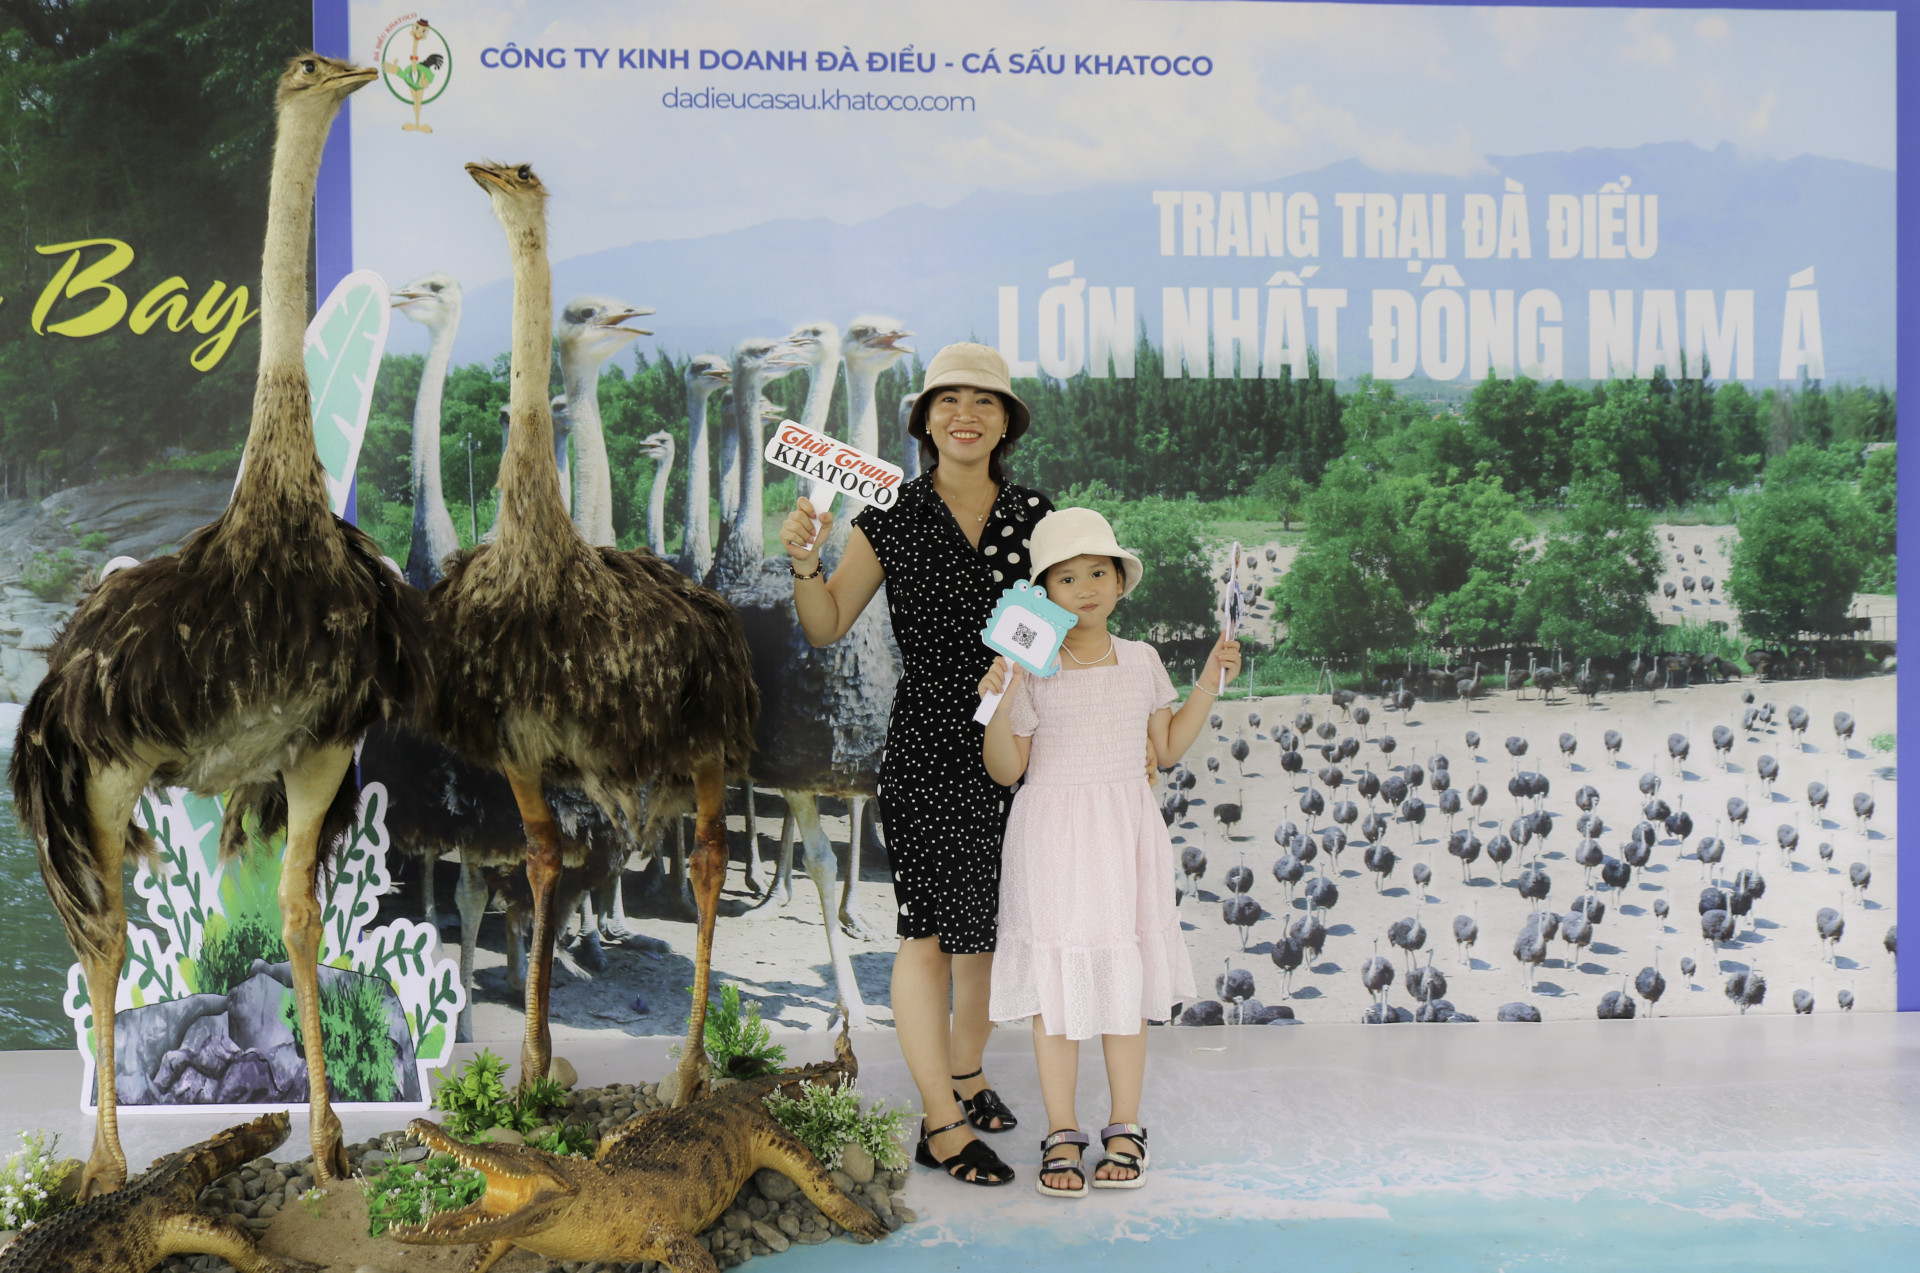 Du khách chụp hình Check - in cùng Khatoco tại khu vực giới thiệu trại đà điểu lớn nhất Đông Nam Á, sản phẩm thời trang da đà điểu, cá sấu Khatoco